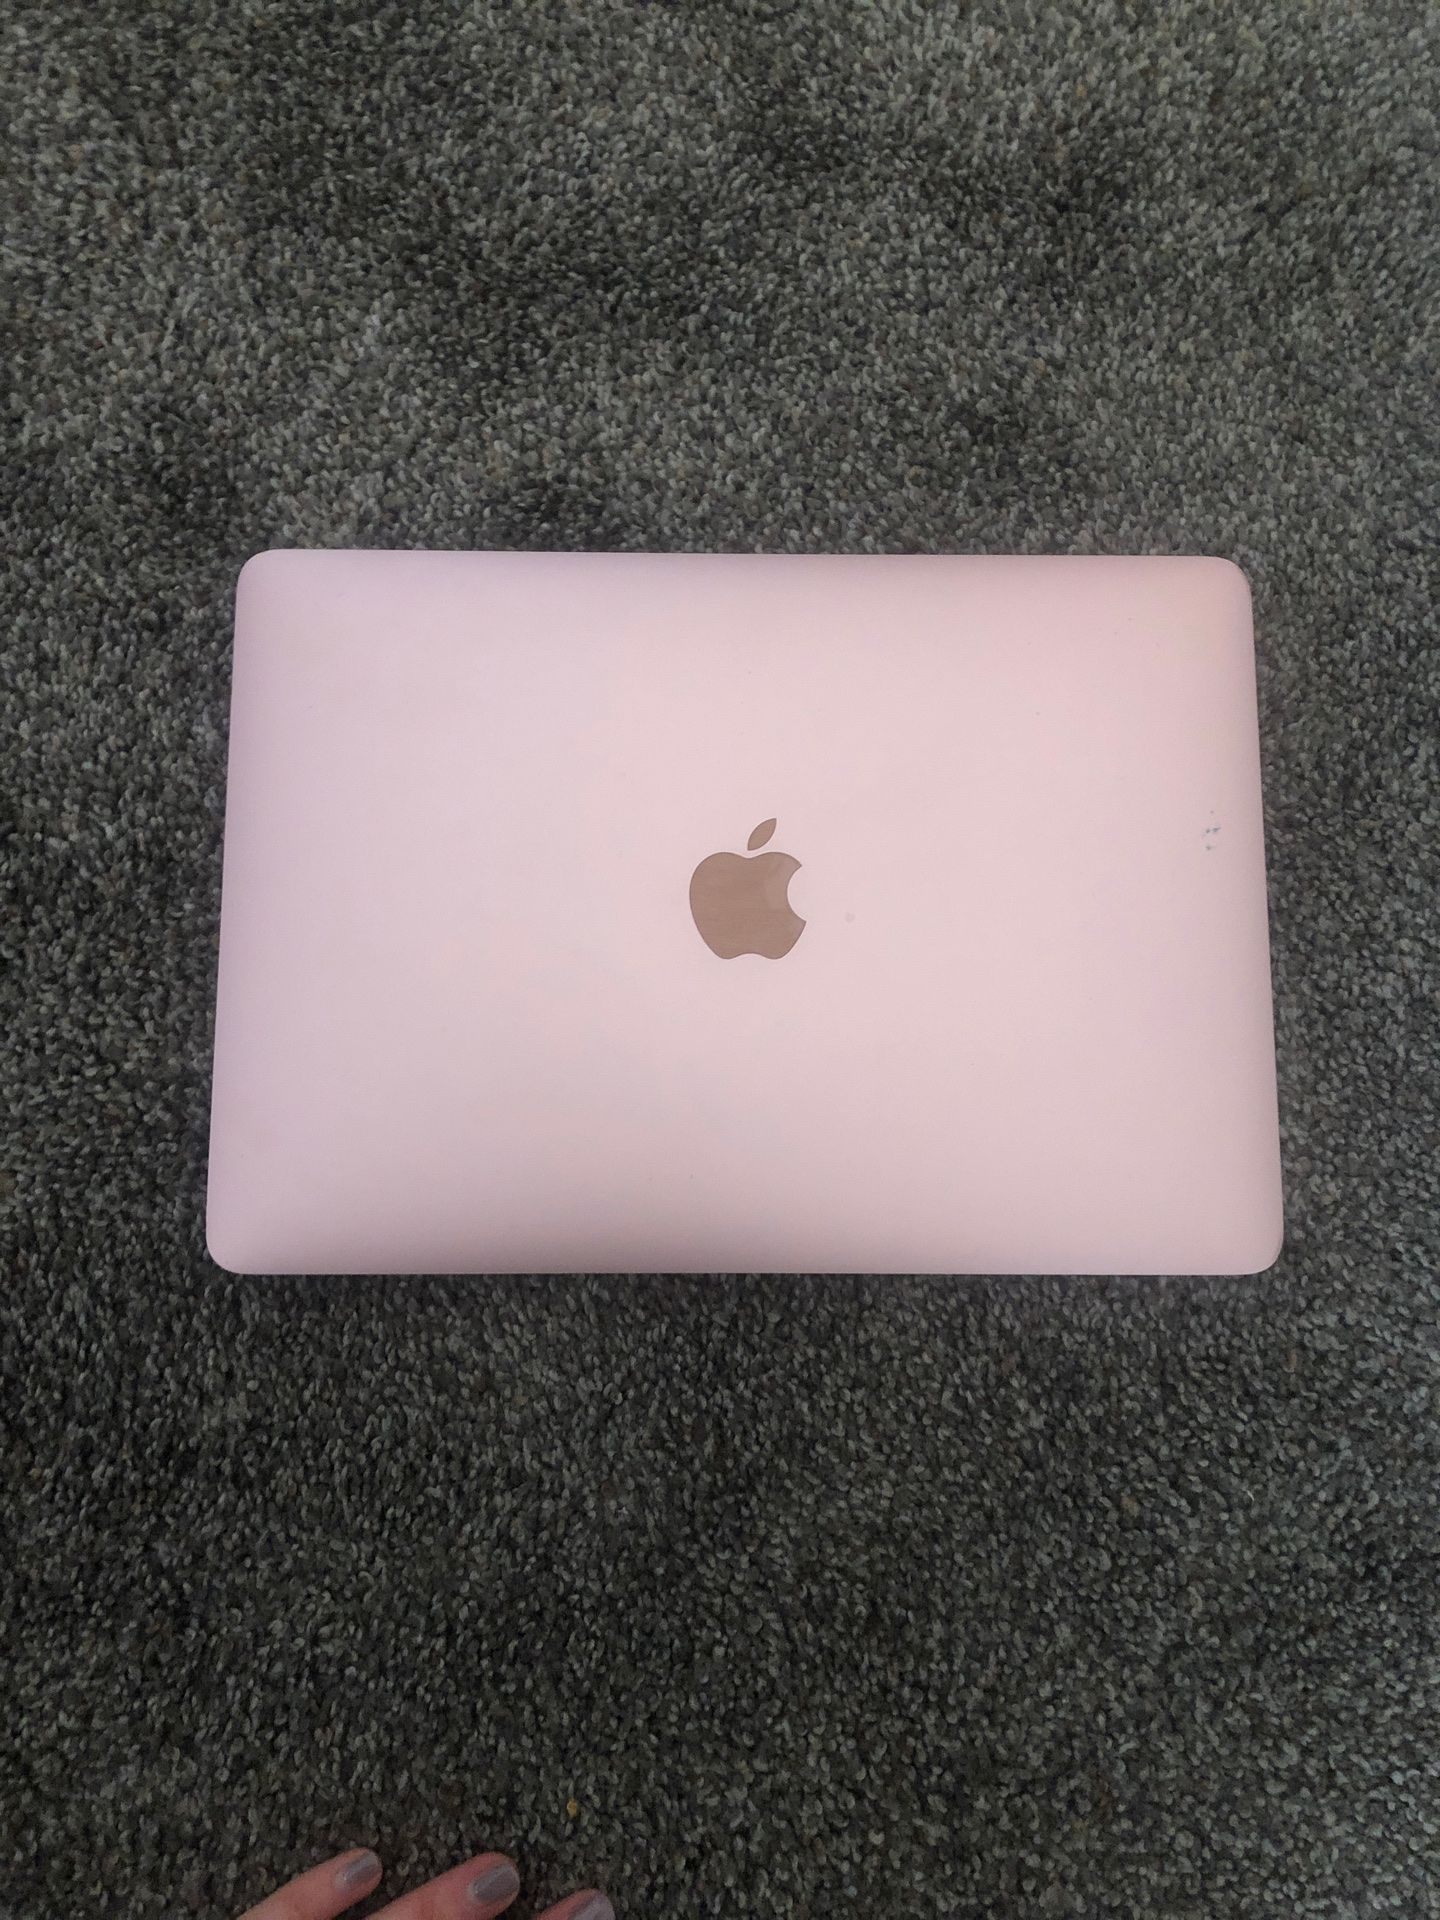 2017 Apple MacBook - 12" - 256 GB SSD - 8 GB RAM